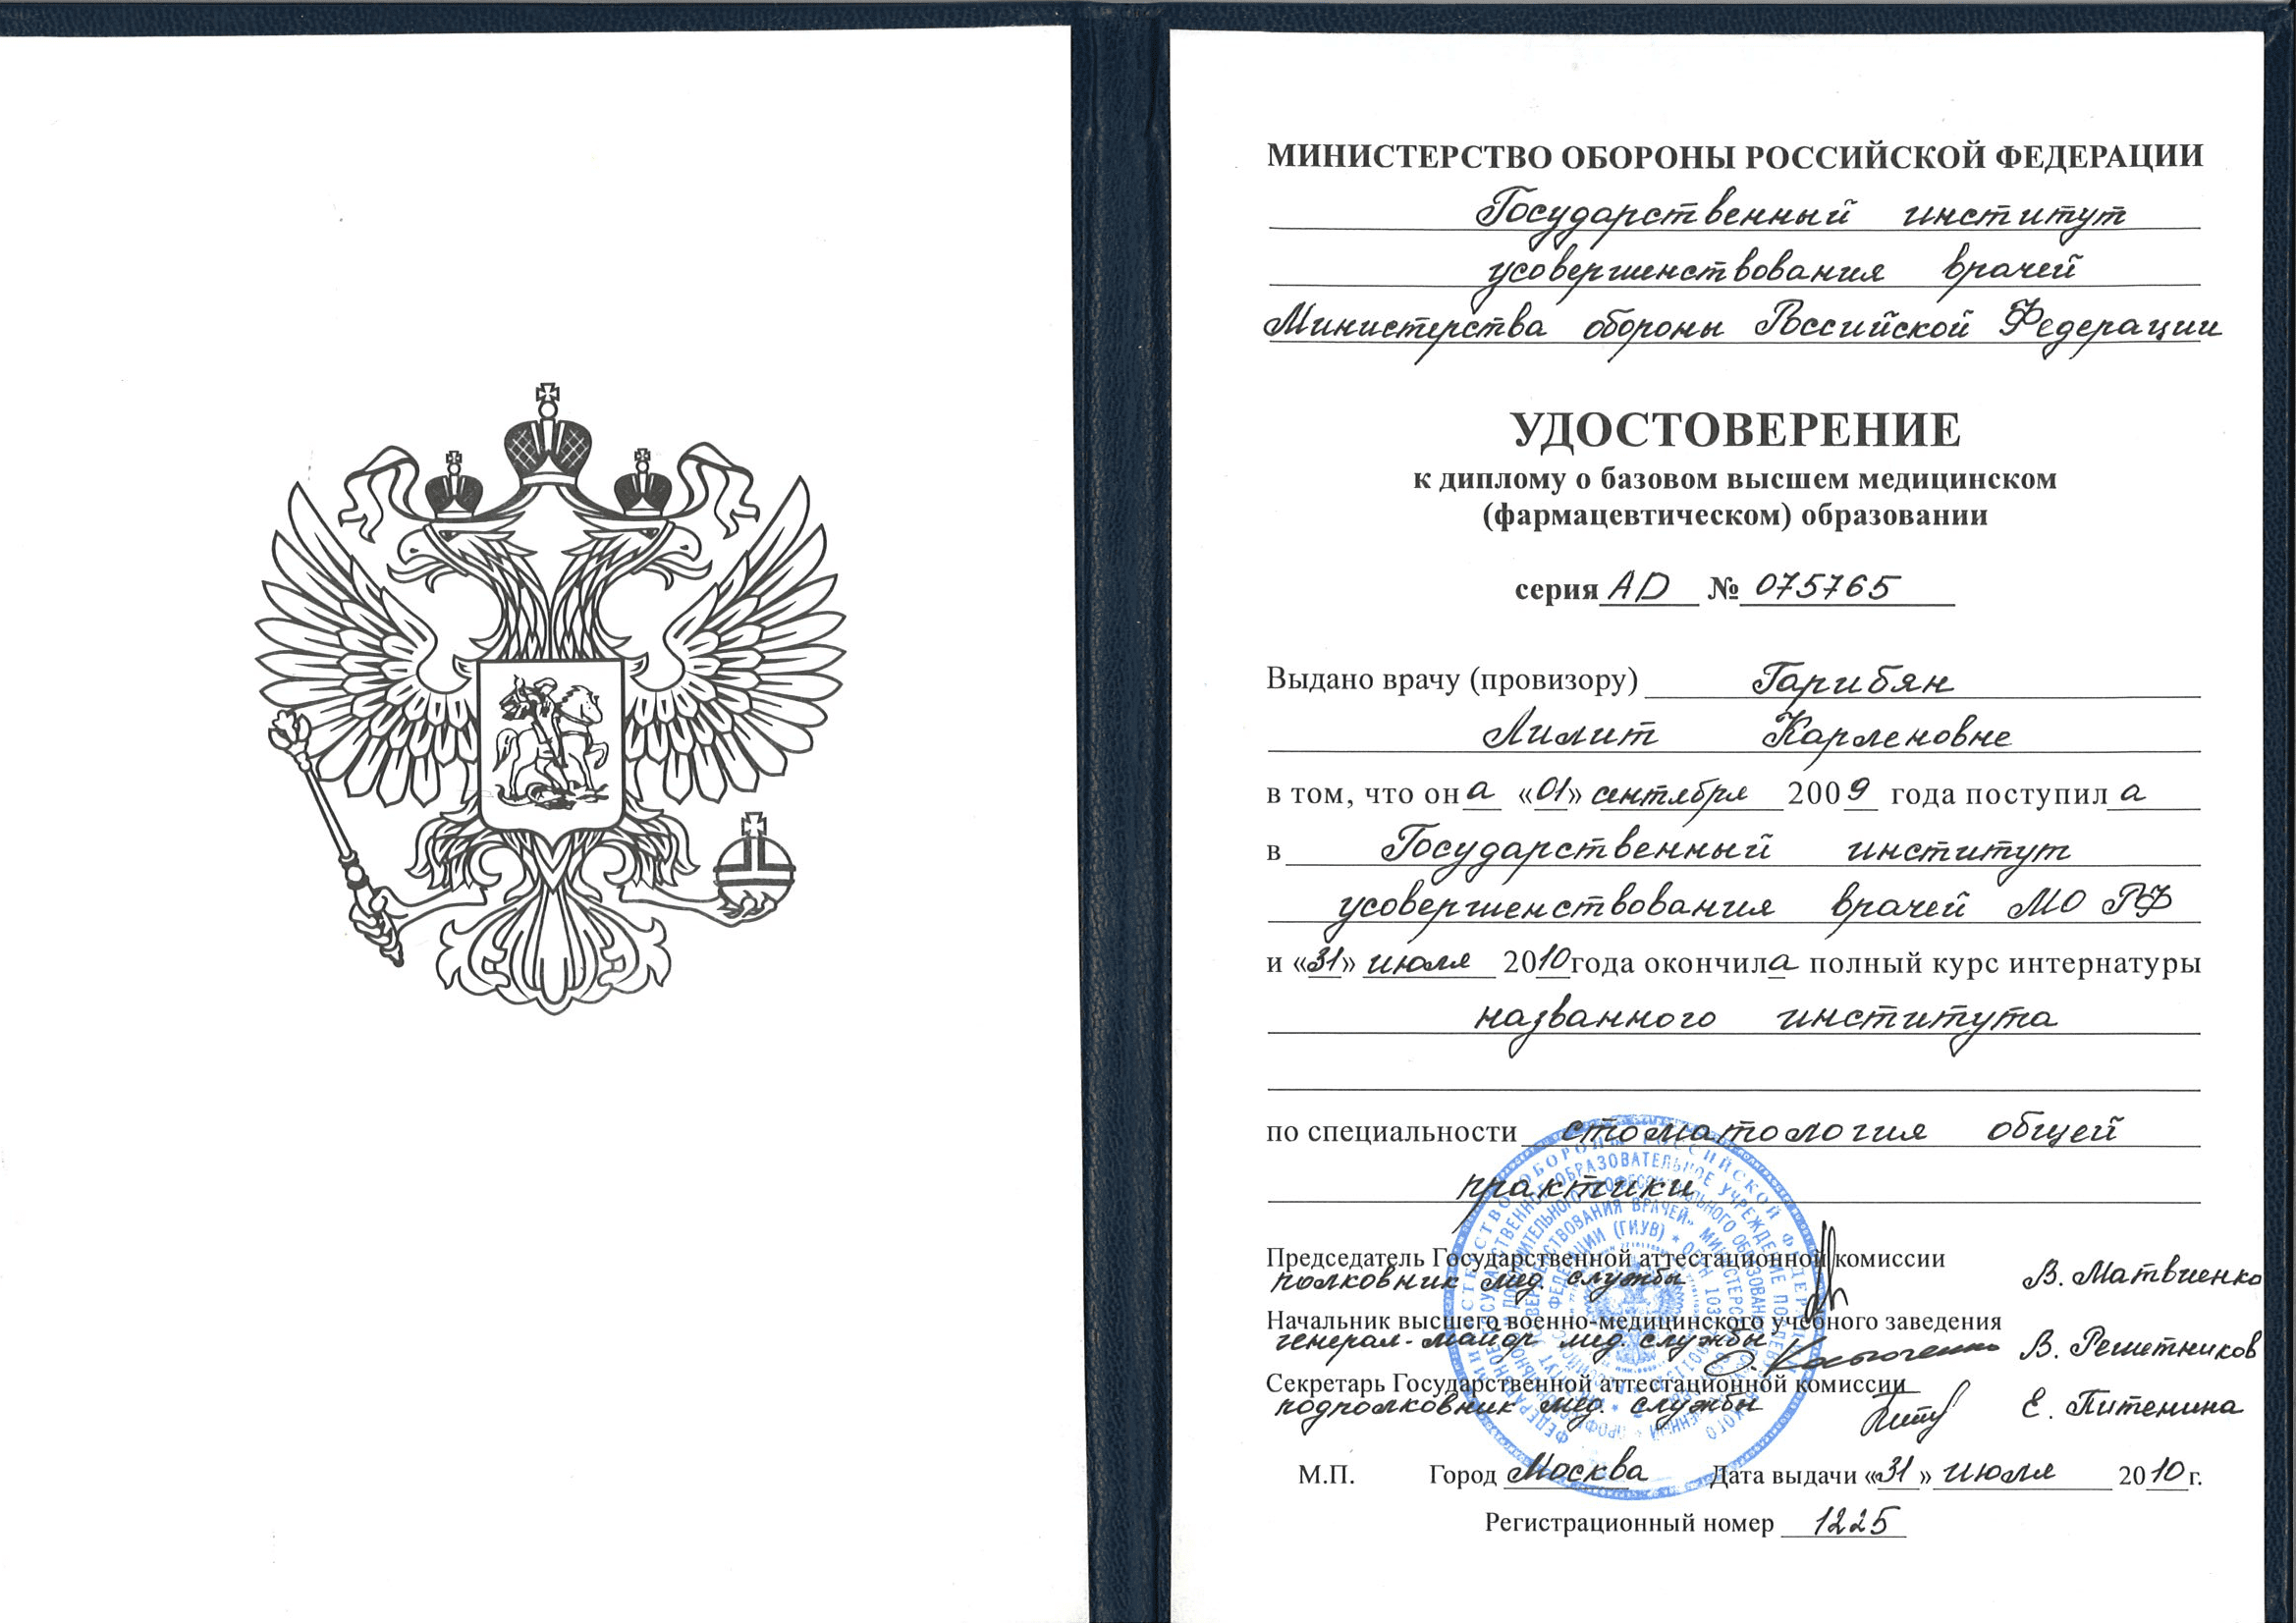 Гарибян Лилит Карленовна сертификат специалиста 2